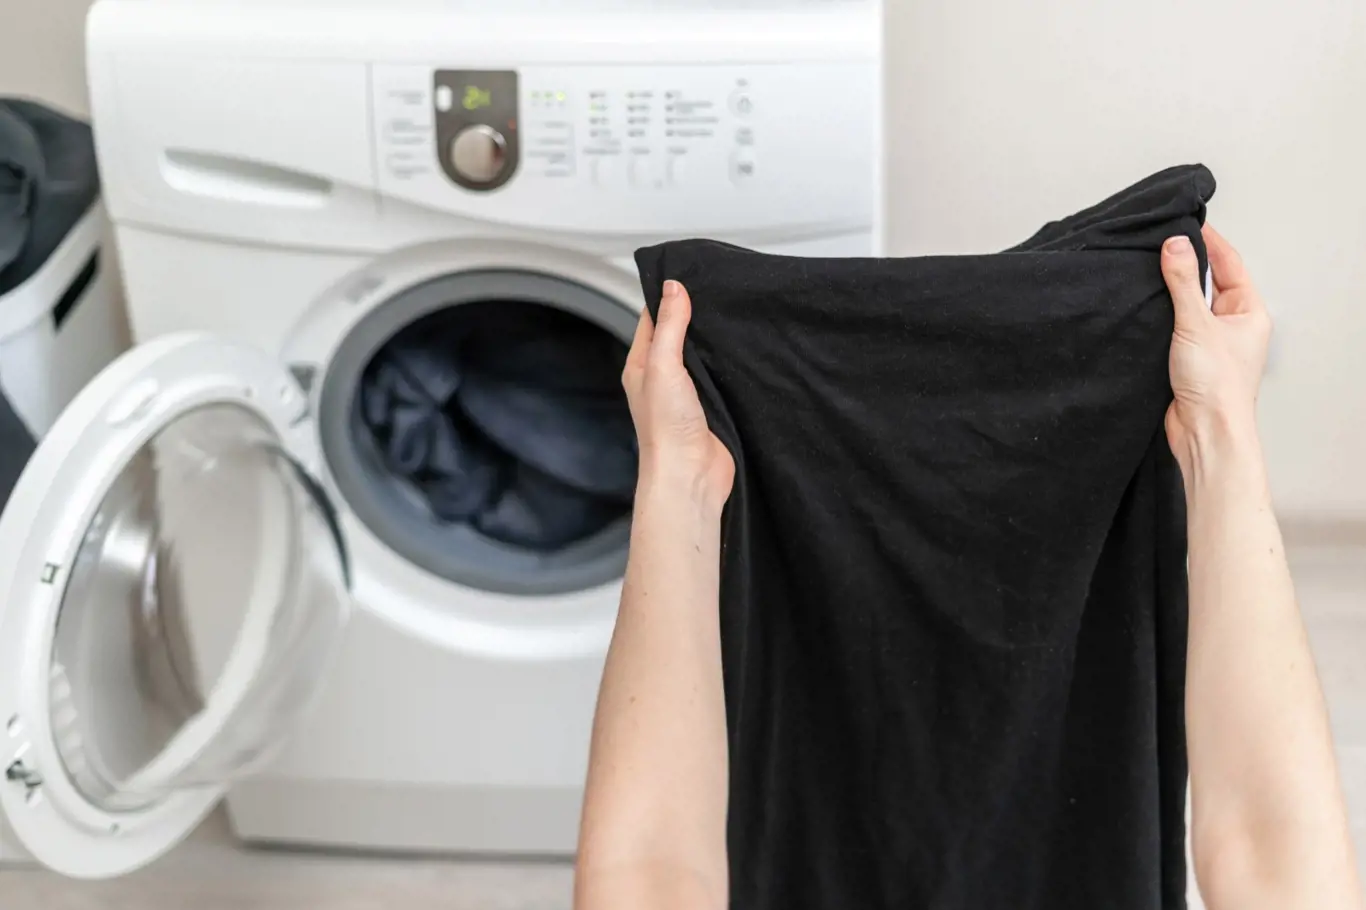 Na výsledný vzhled vypraného prádla má obrovský vliv stav vaší pračky. Na tmavém oblečení jsou totiž vidět nečistoty z předchozího praní mnohem více.